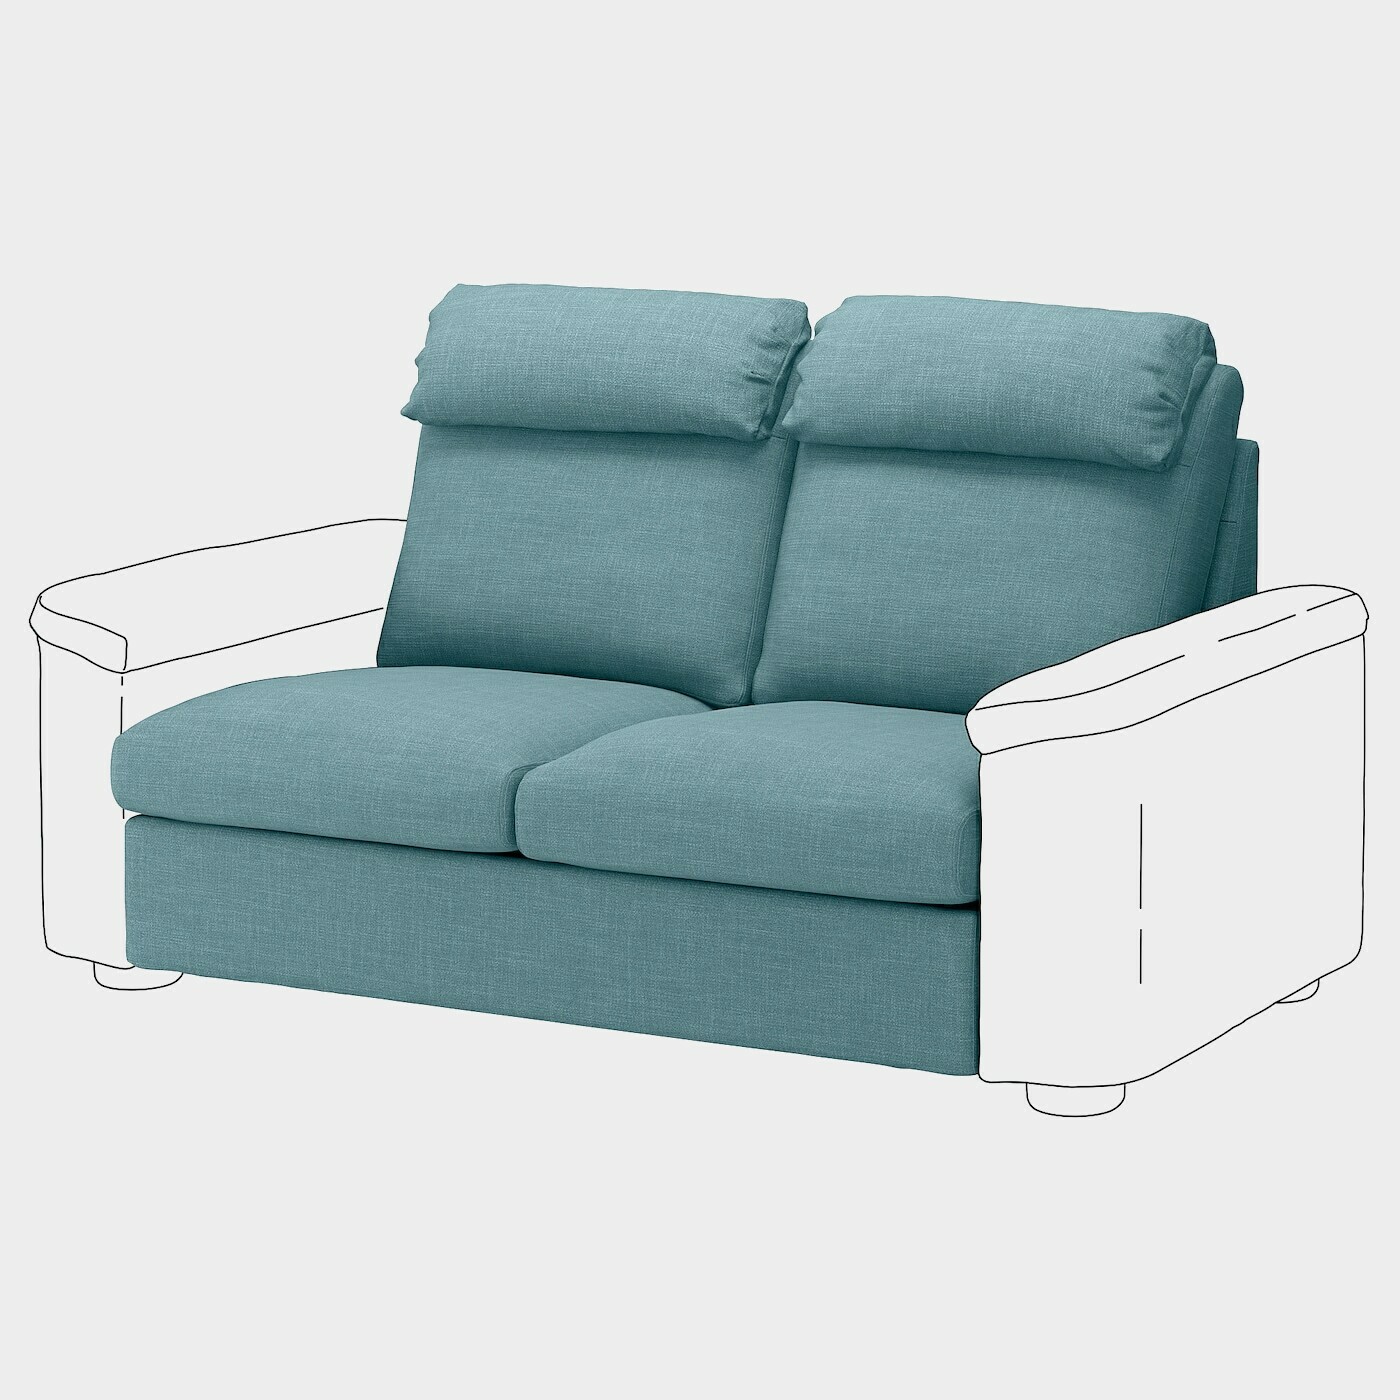 LIDHULT Sitzelement 2  - Wohnlandschaften & Sitzelemente - Möbel Ideen für dein Zuhause von Home Trends. Möbel Trends von Social Media Influencer für dein Skandi Zuhause.